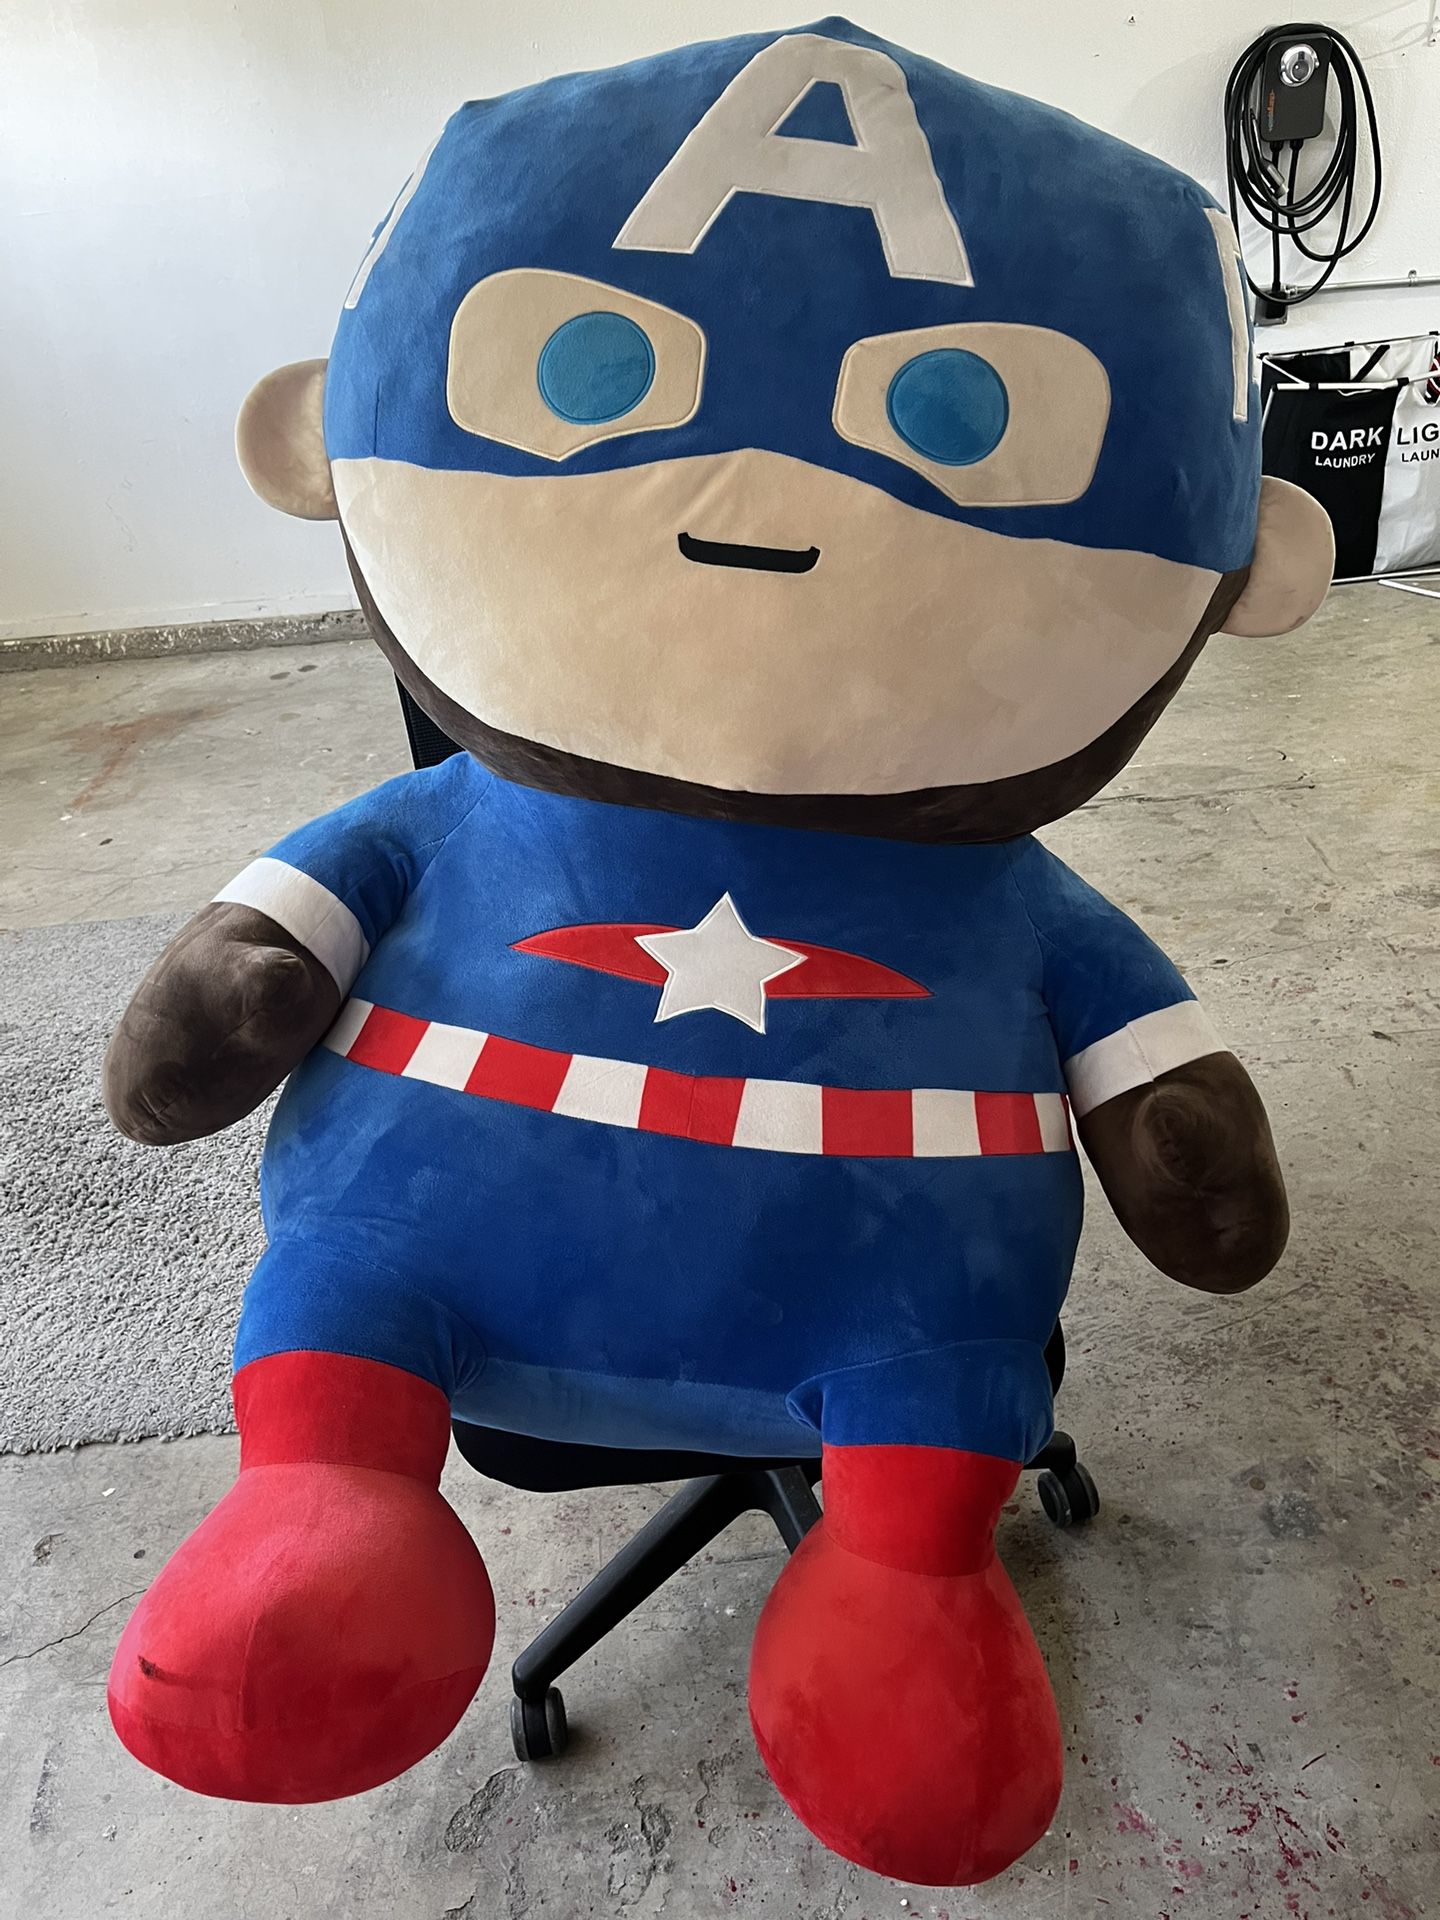 Giant Captain America Plush Toy 